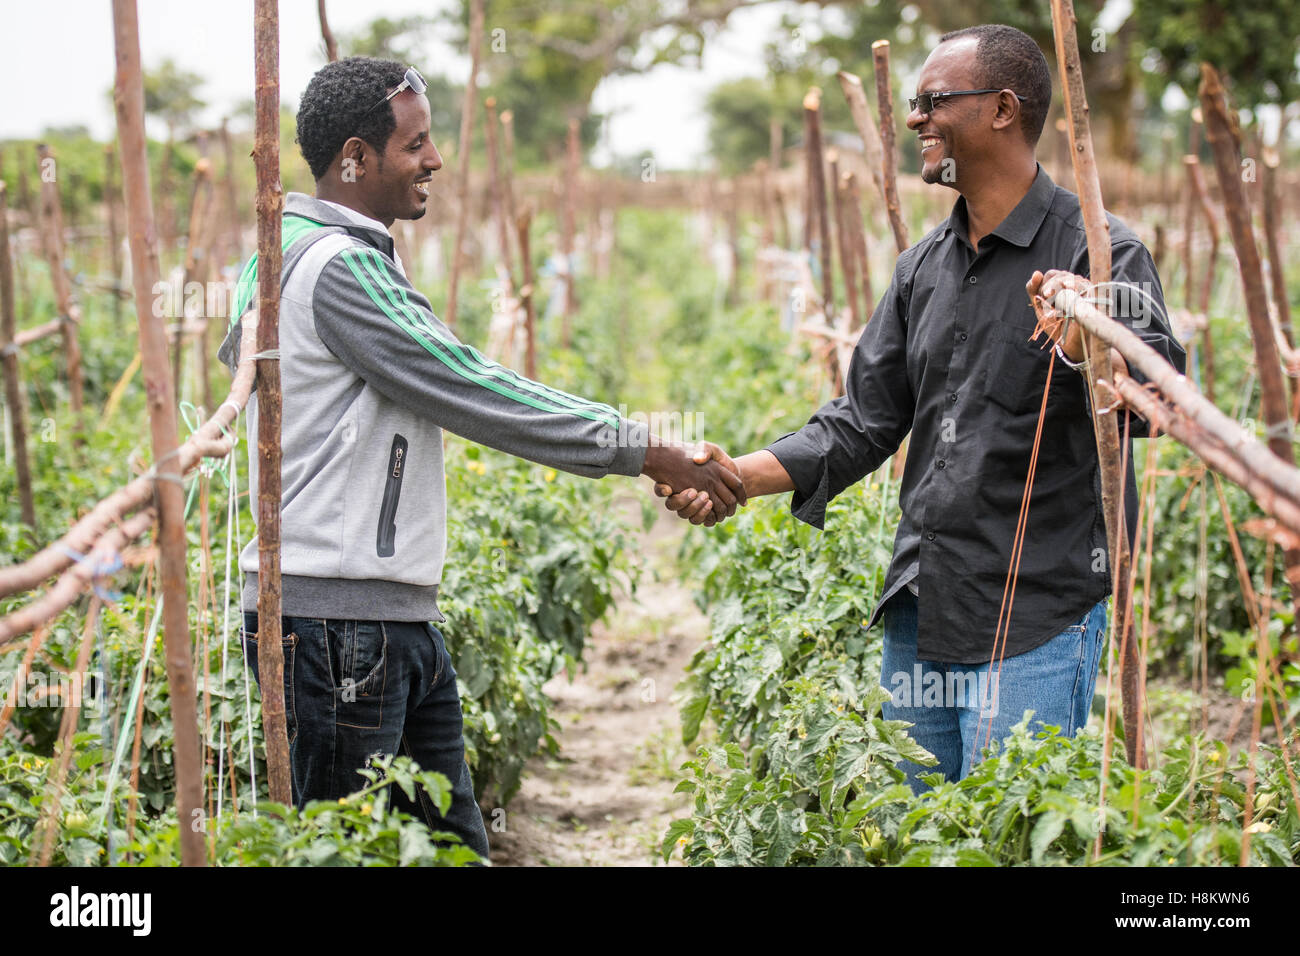 Meki Batu, Äthiopien - männliche Arbeitnehmer gestellt Händeschütteln neben Tomaten Pflanzen an den Obst- und Gemüse-Erzeuger-Station Stockfoto